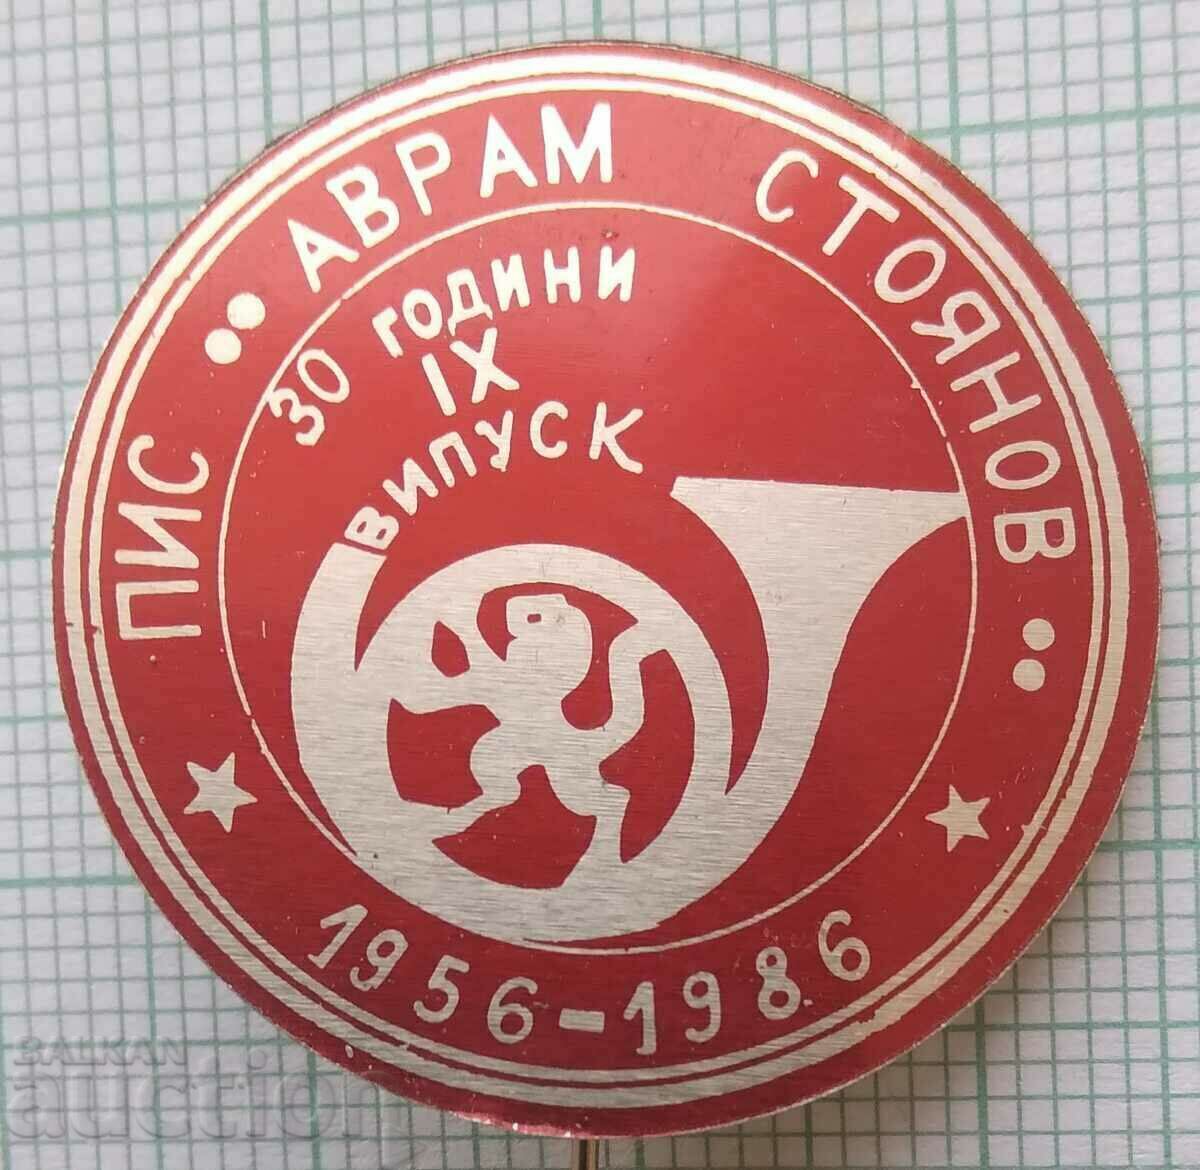 14465 Semi-higher Institute of Commun. Avram Stoyanov - 30 years PIS